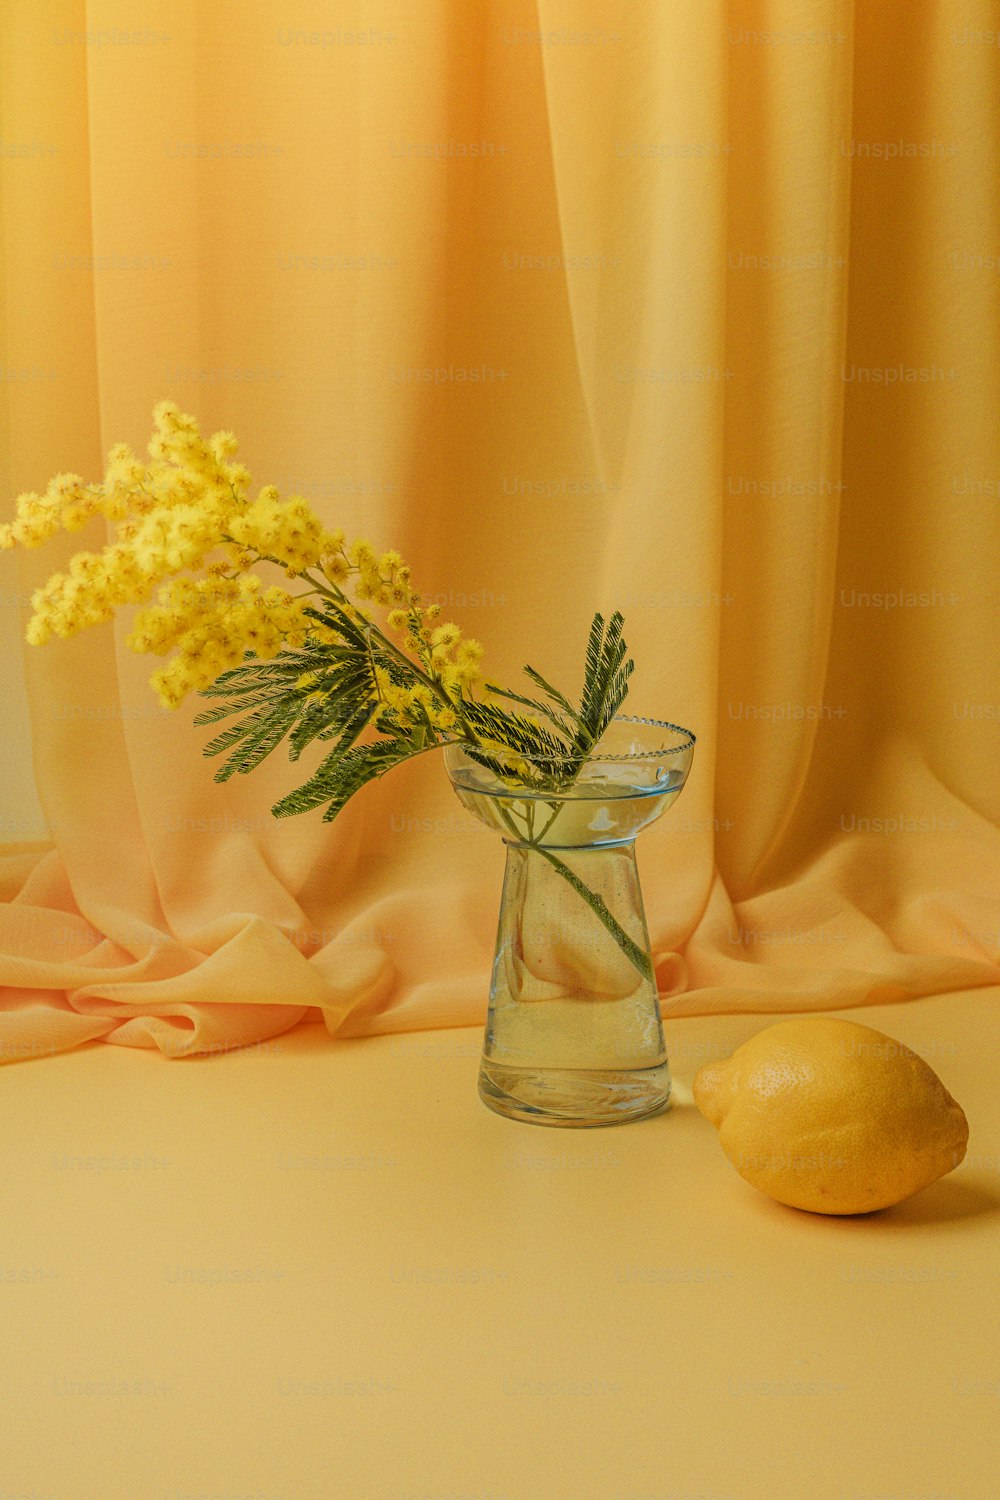 テーブルの上に花とレモンが入ったガラスの花瓶